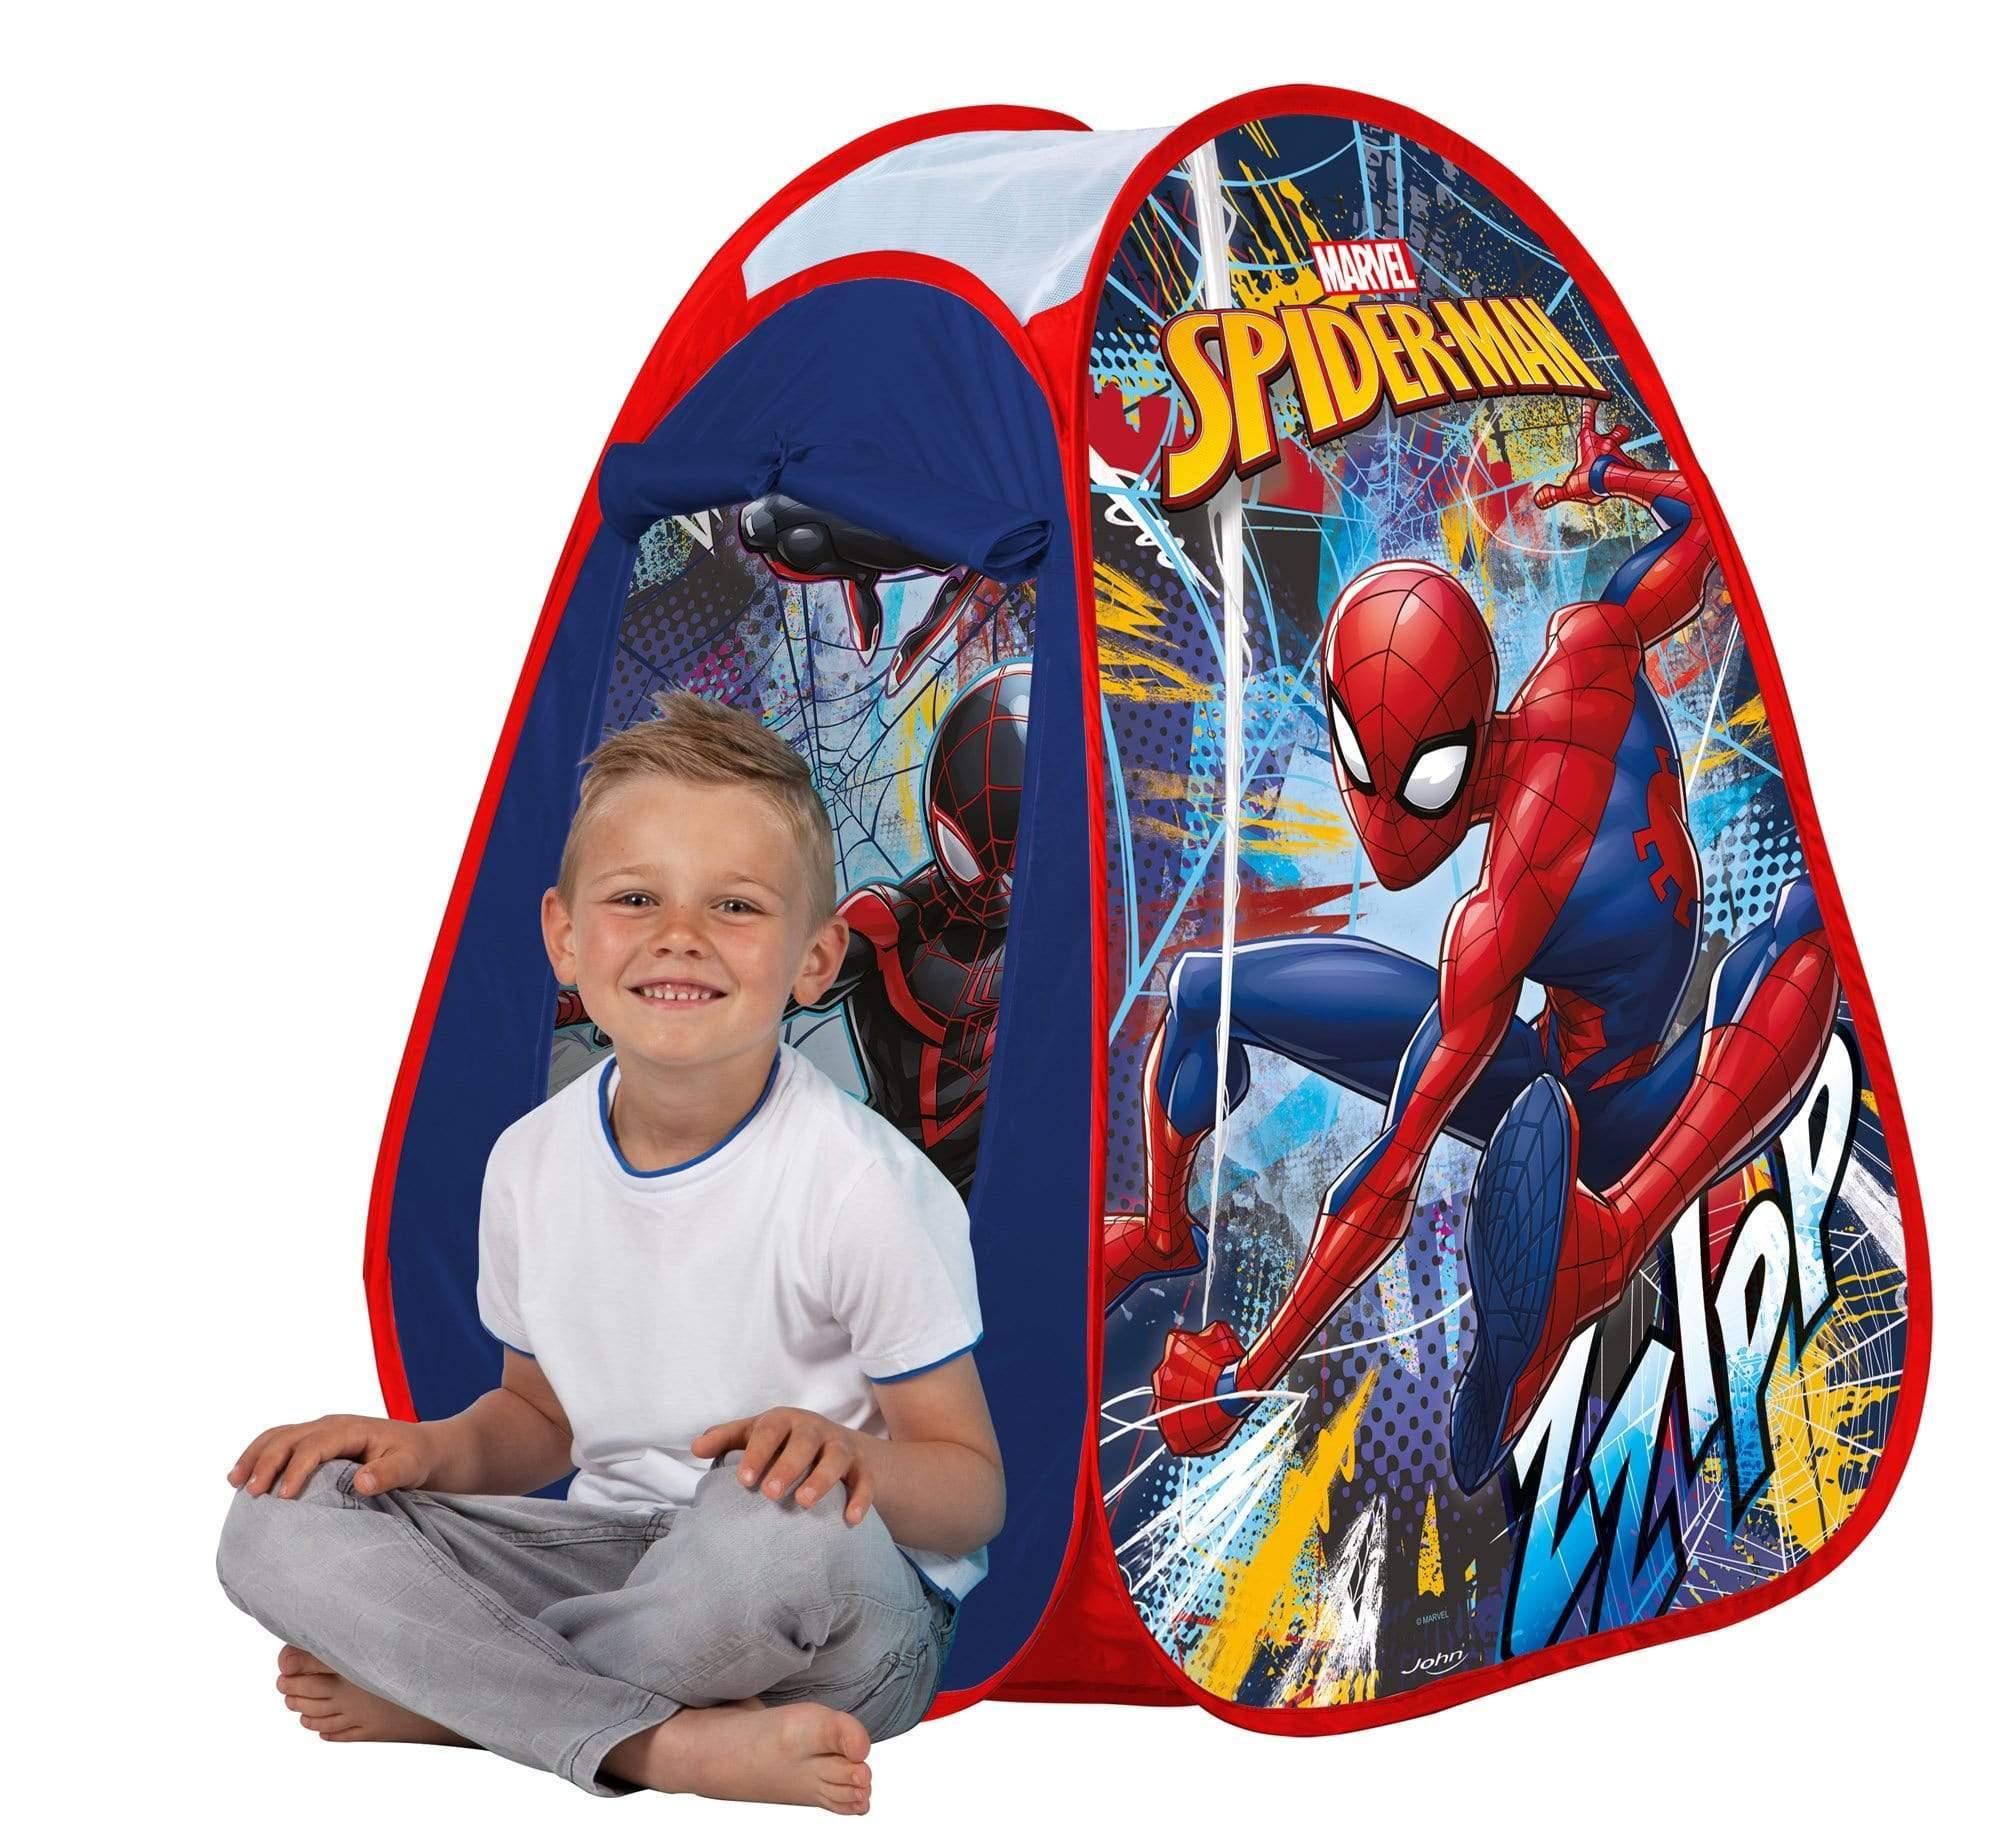 خيمة للأطفال JOHN - SPIDERMAN POP UP PLAY TENT, IN A DISPLAY BOX